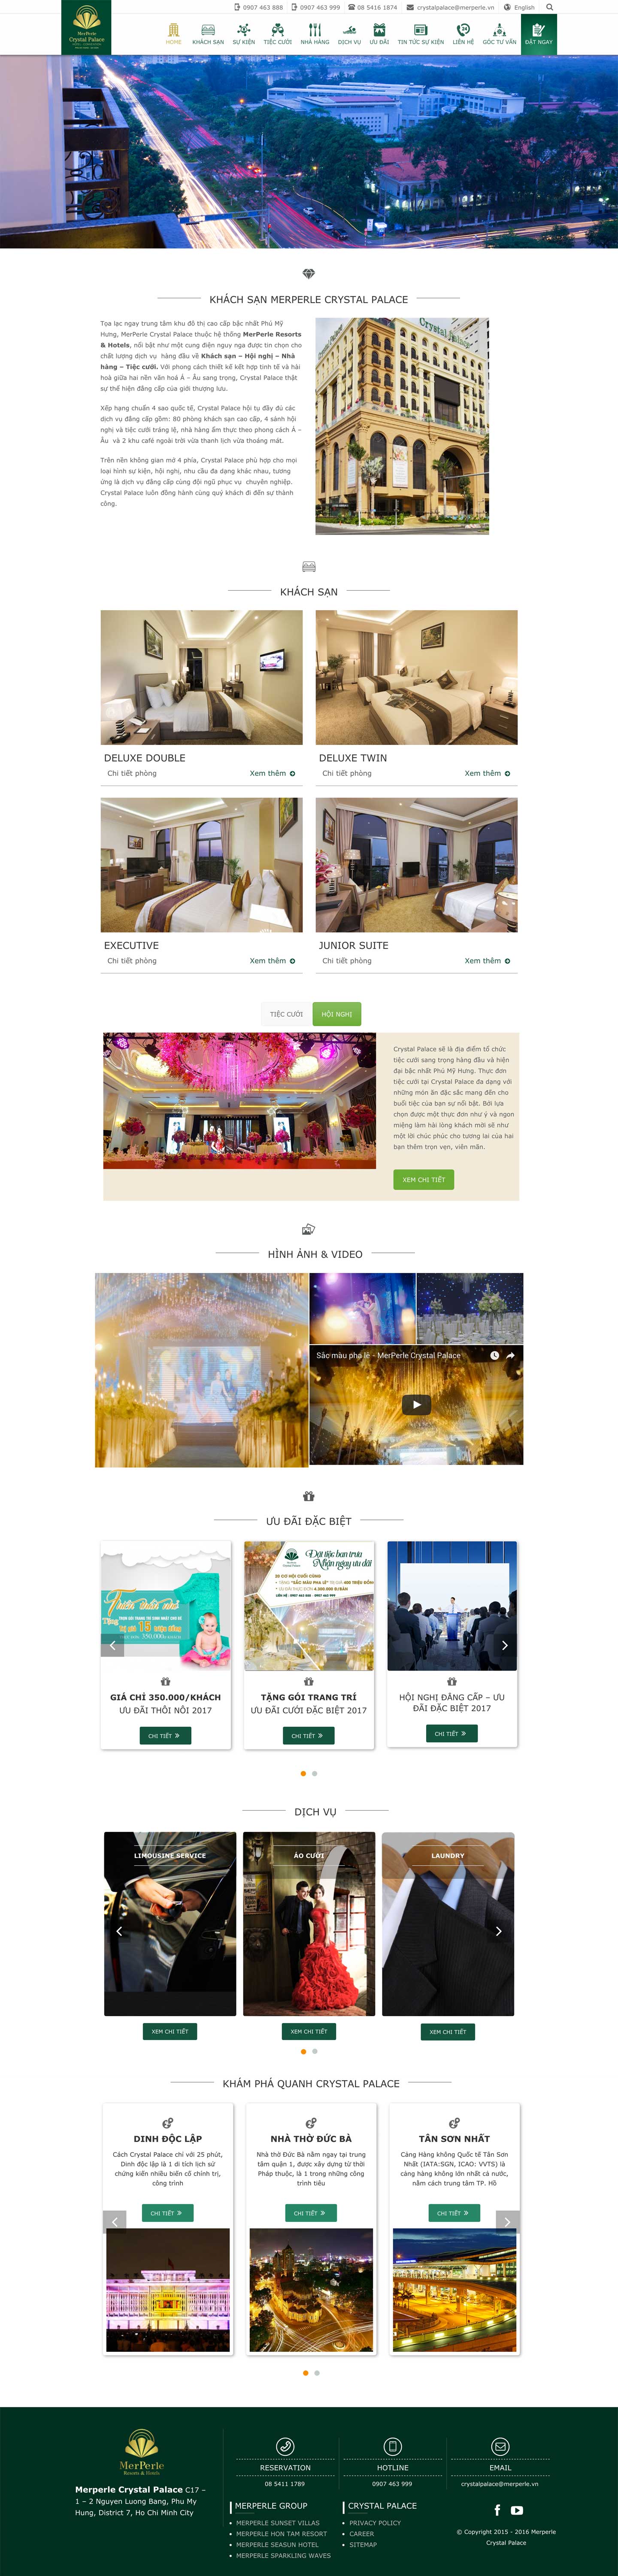 Thiết kế web trung tâm hội nghị nhà hàng tiệc cưới Crystal Palace trên mobile